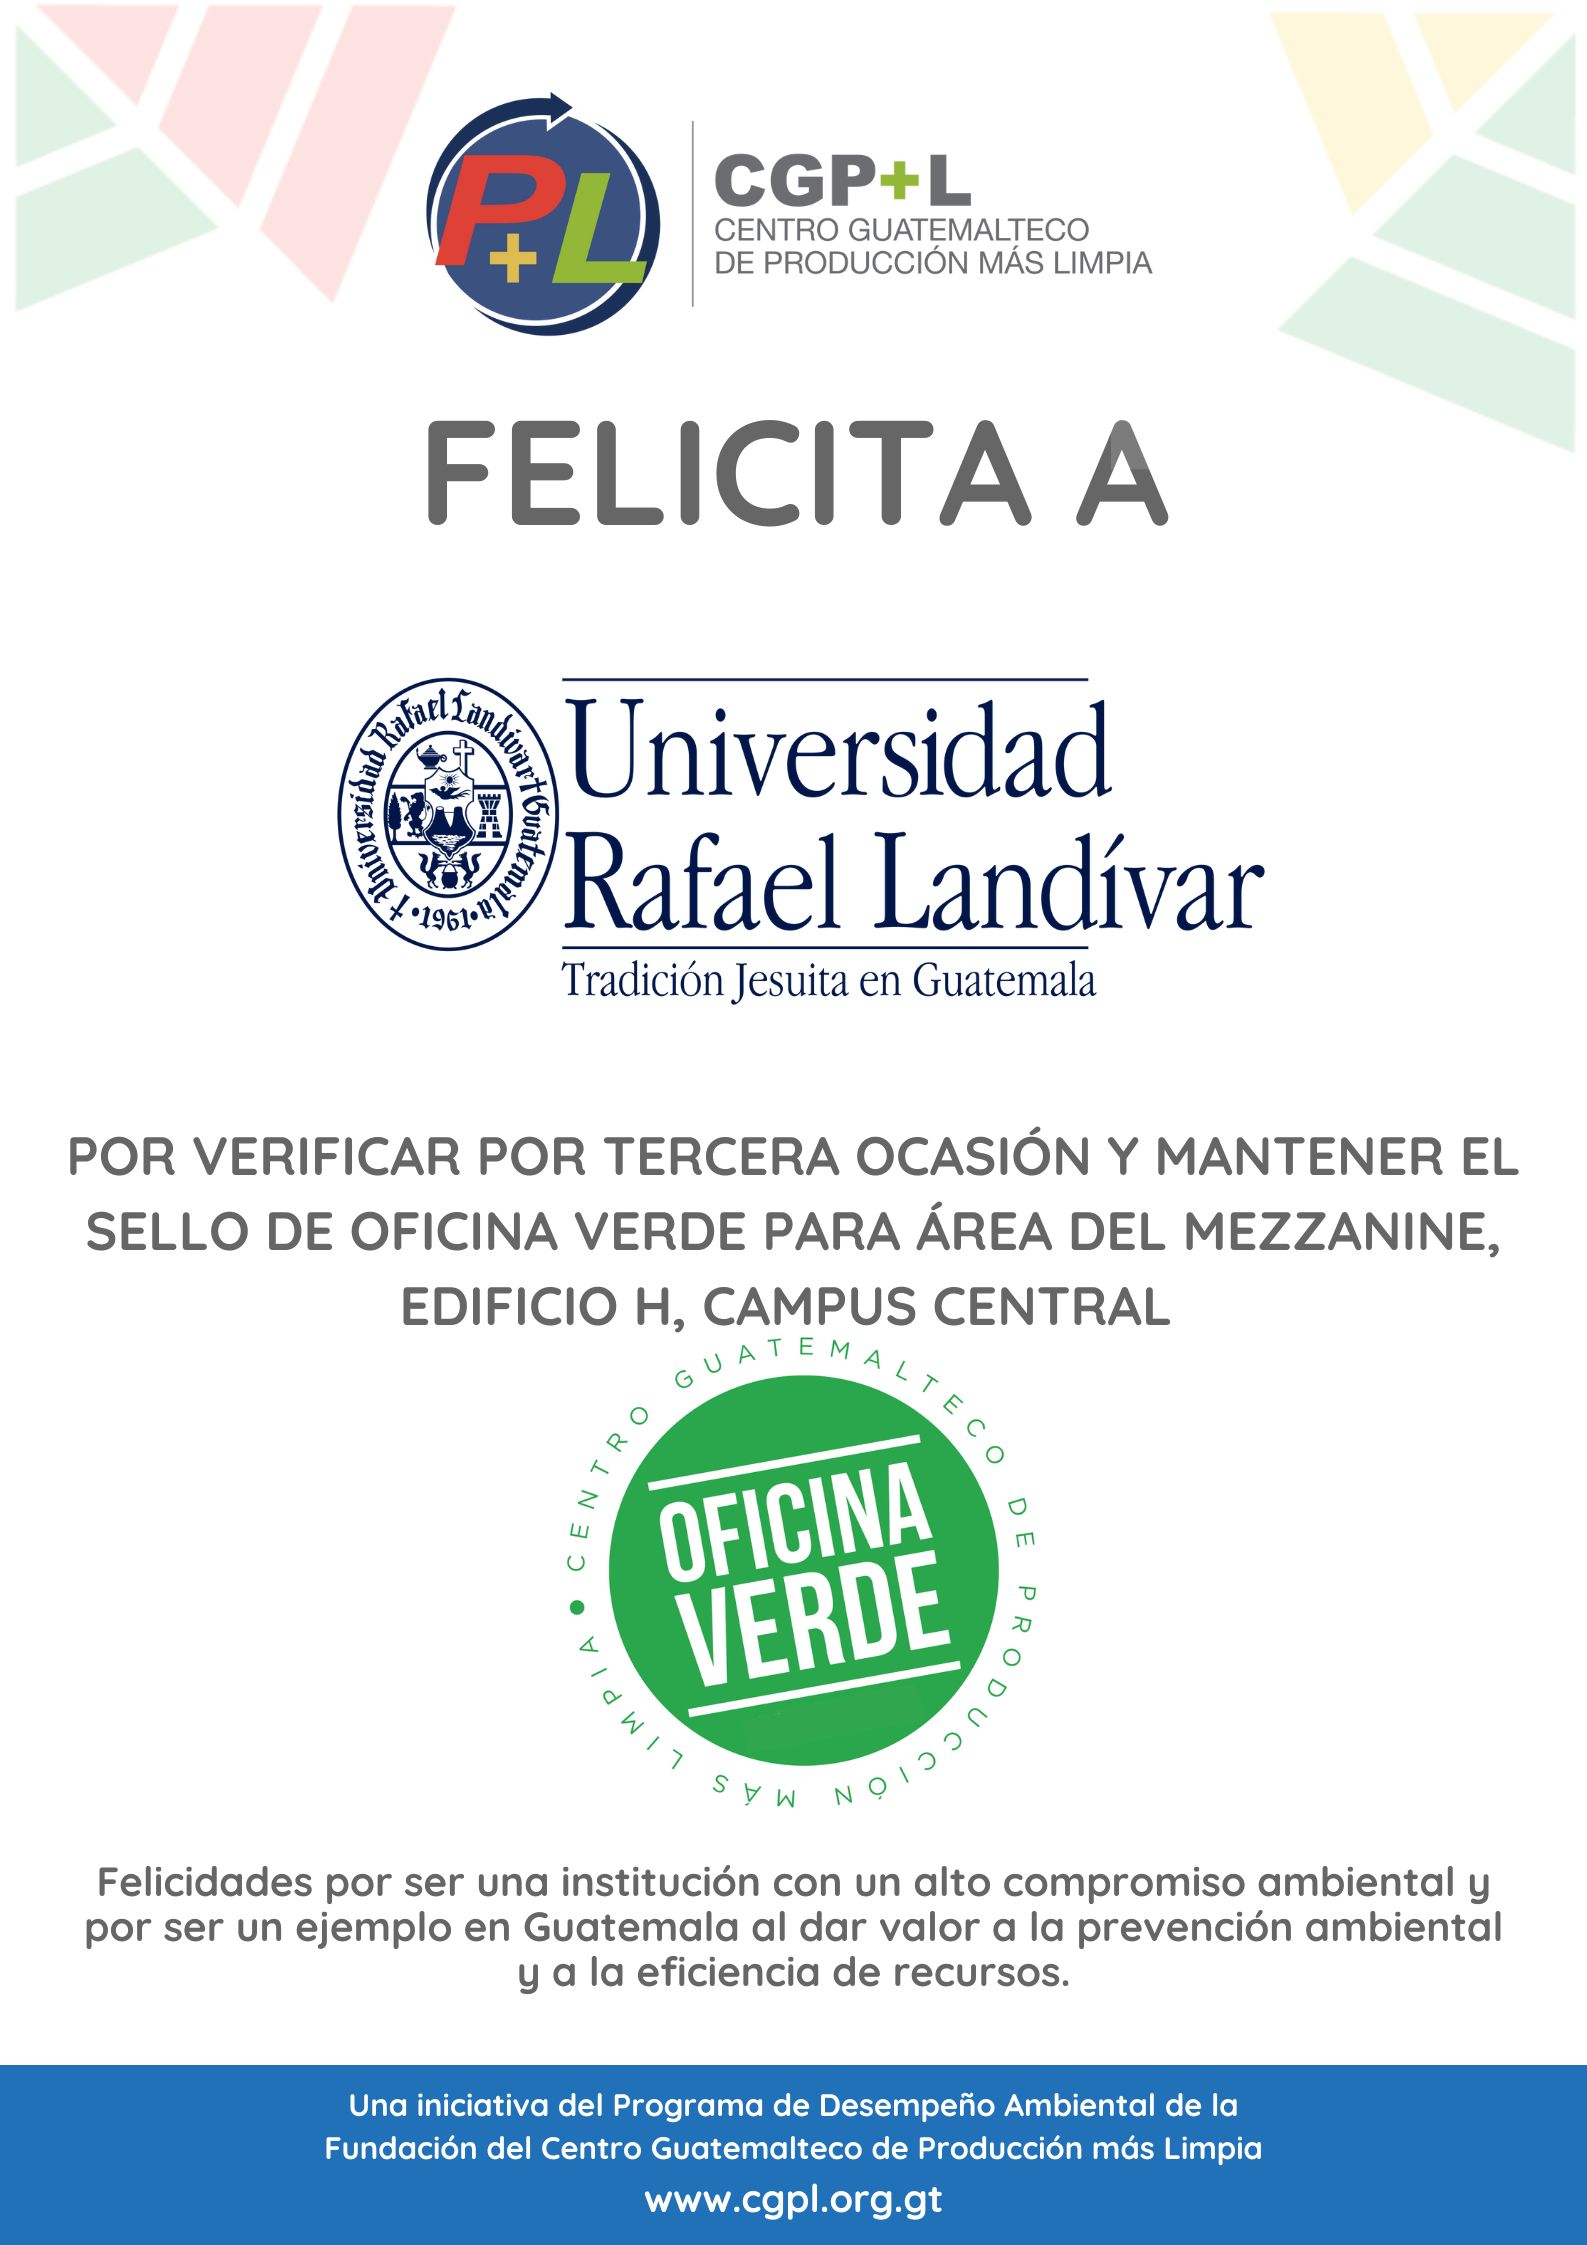 ¡Felicidades A La Universidad Rafael Landivar Por Mantener El Sello De Oficina Verde!